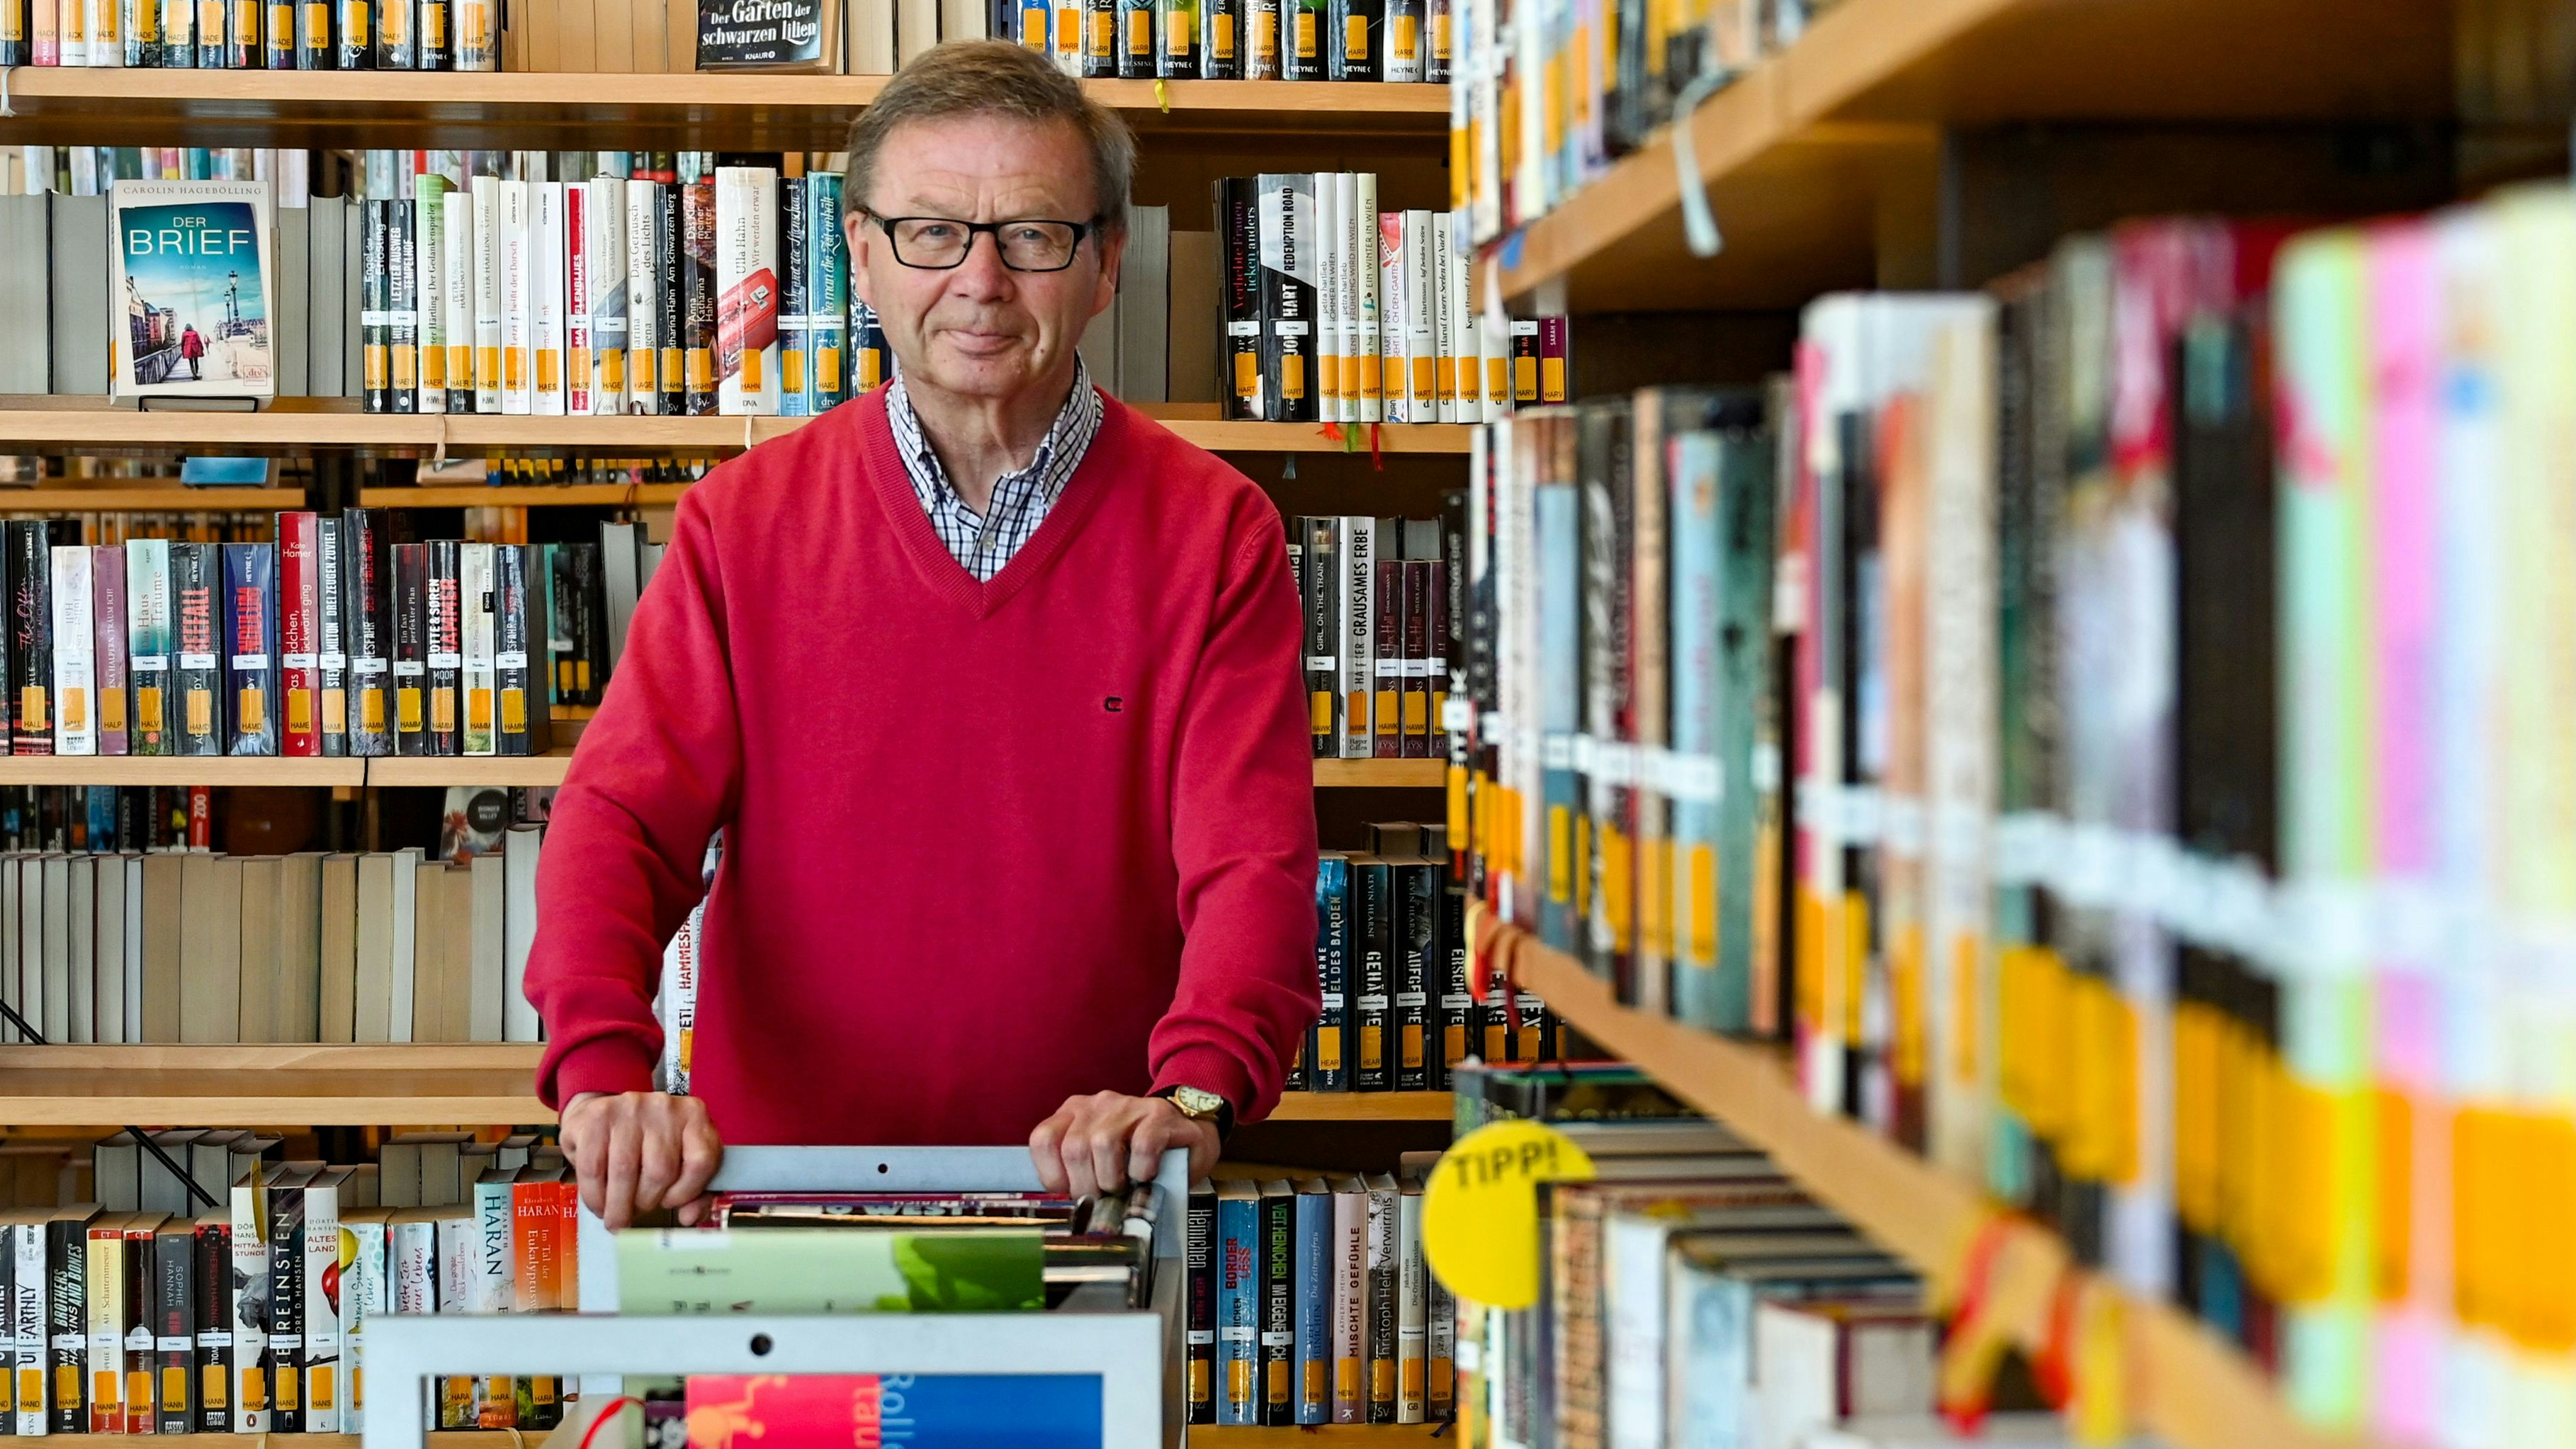 Ehrenamtlich aktiv: Josef Bosse hilft einmal in der Woche in der Bücherei. Foto: Hermes